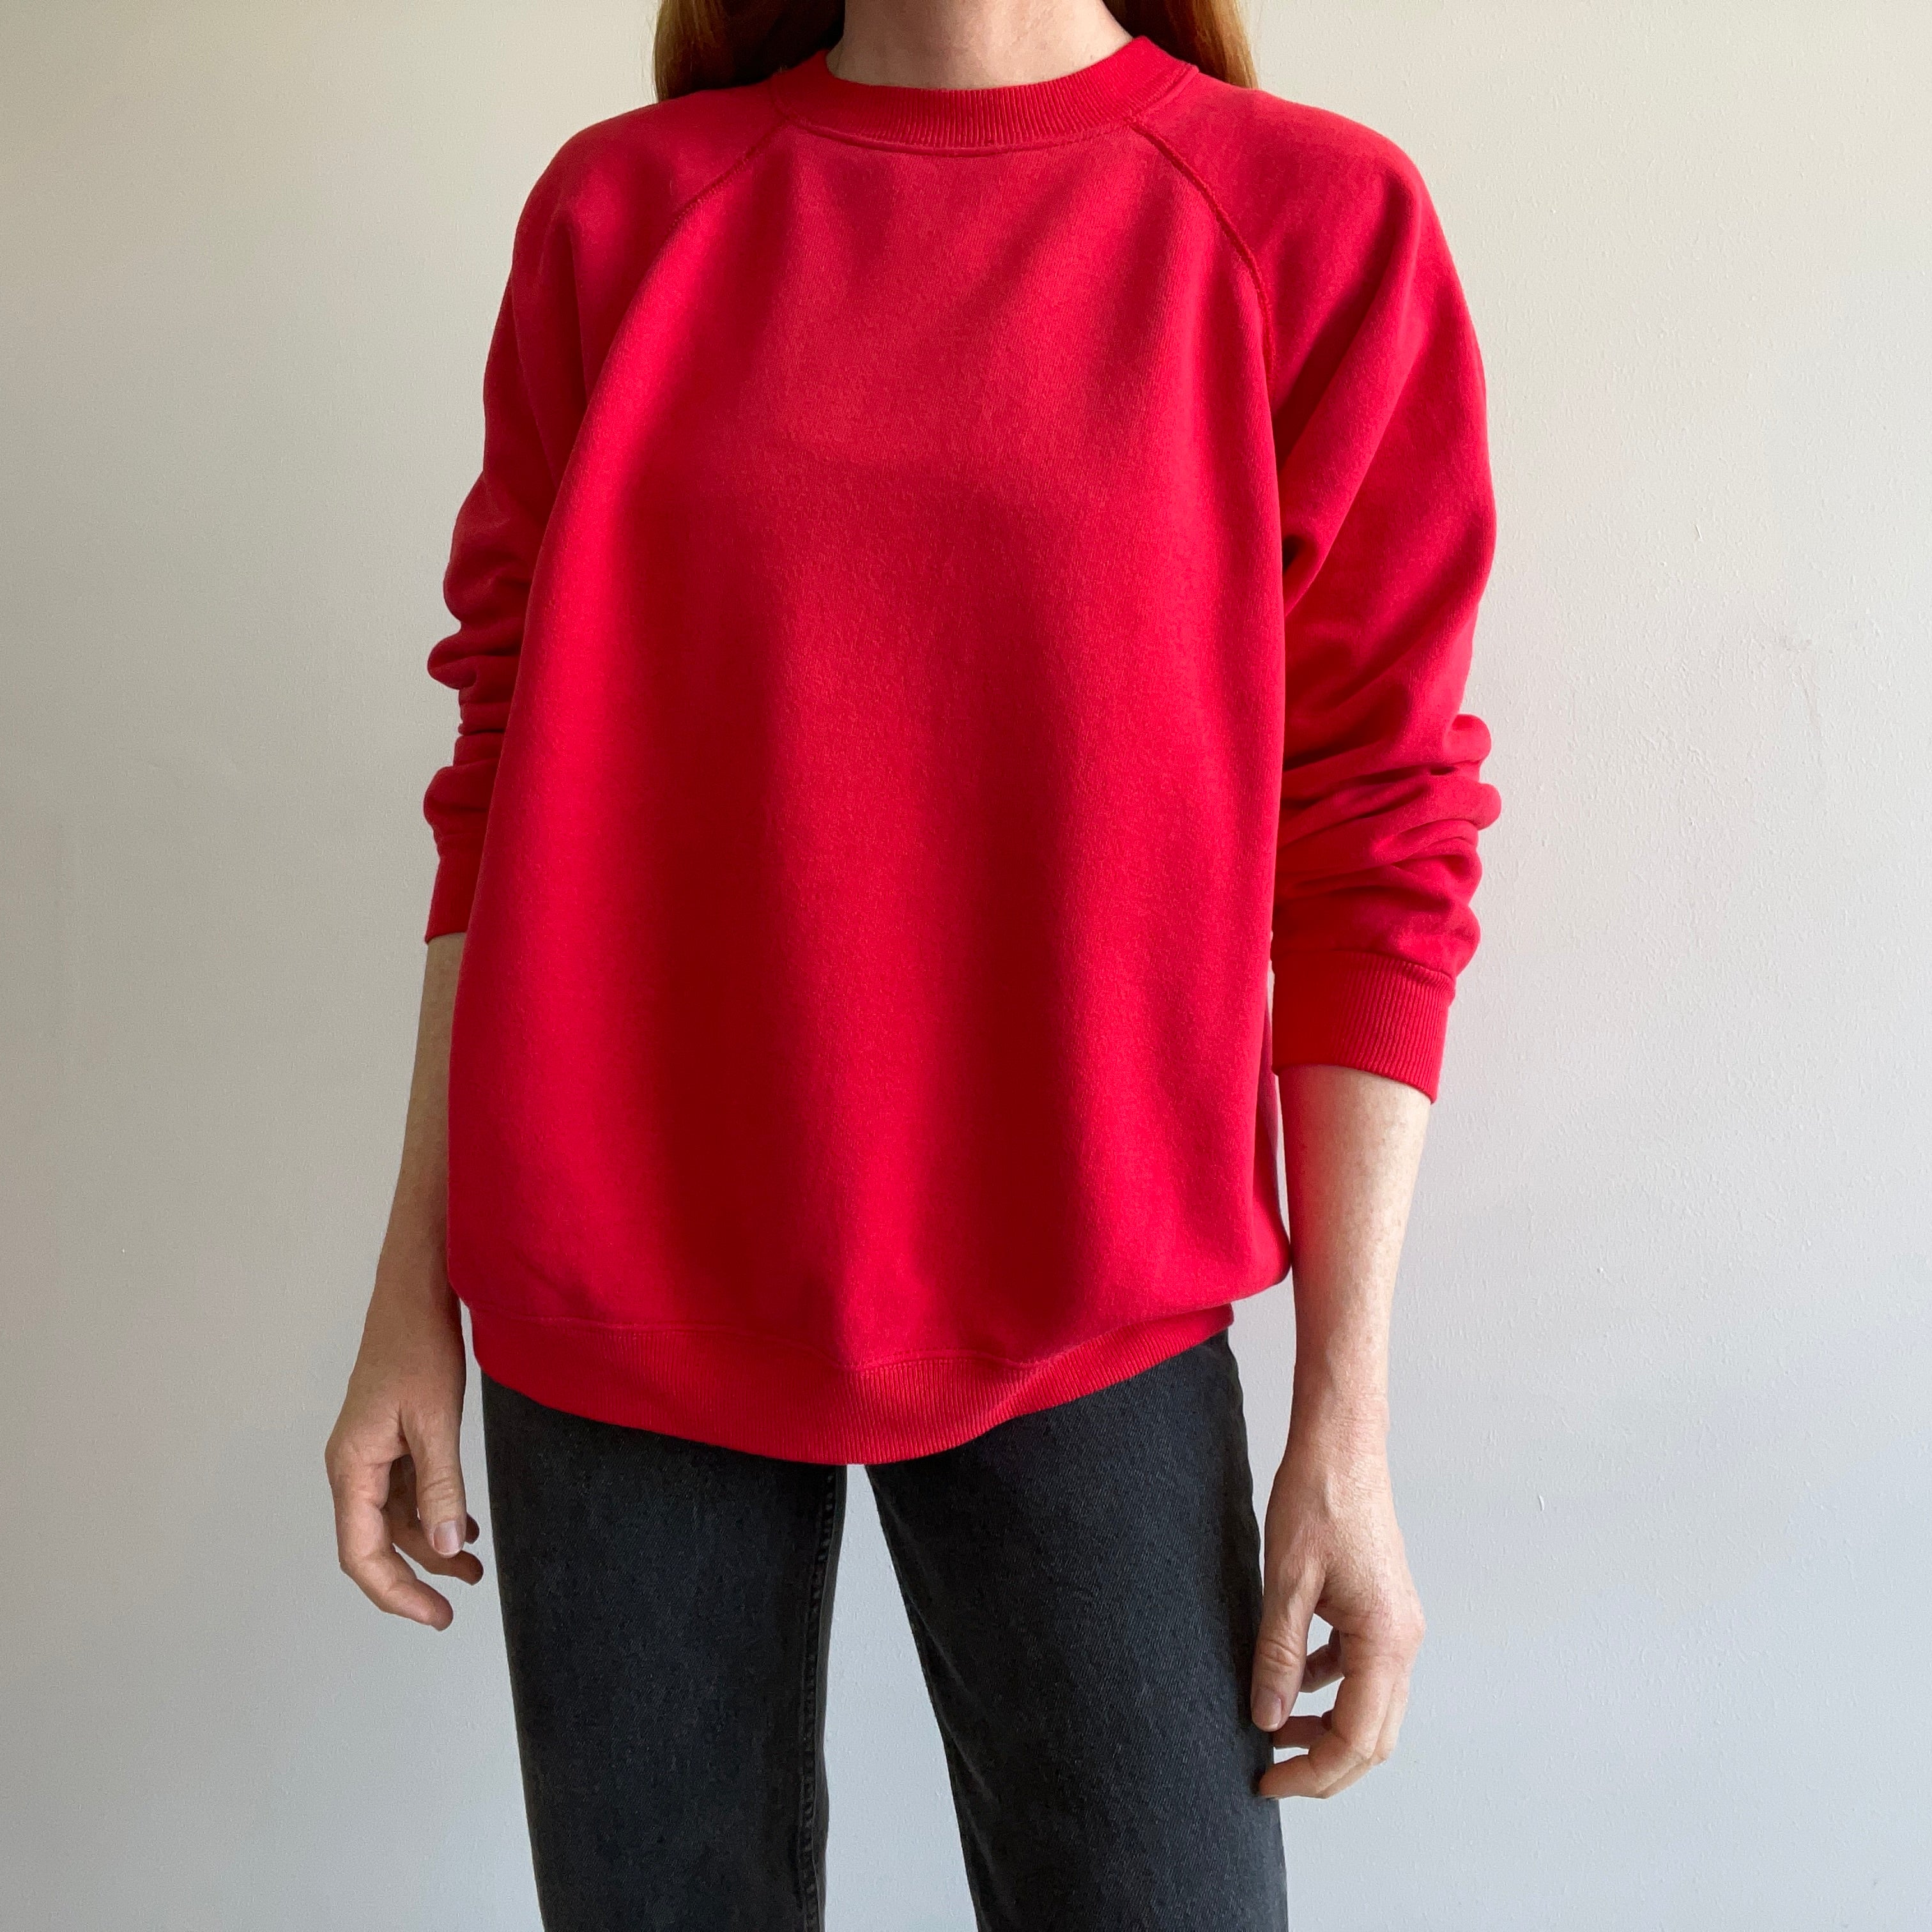 NOS Deadstock Hanes Her Way Vintage Sweatshirt Red Soft 80s 90s